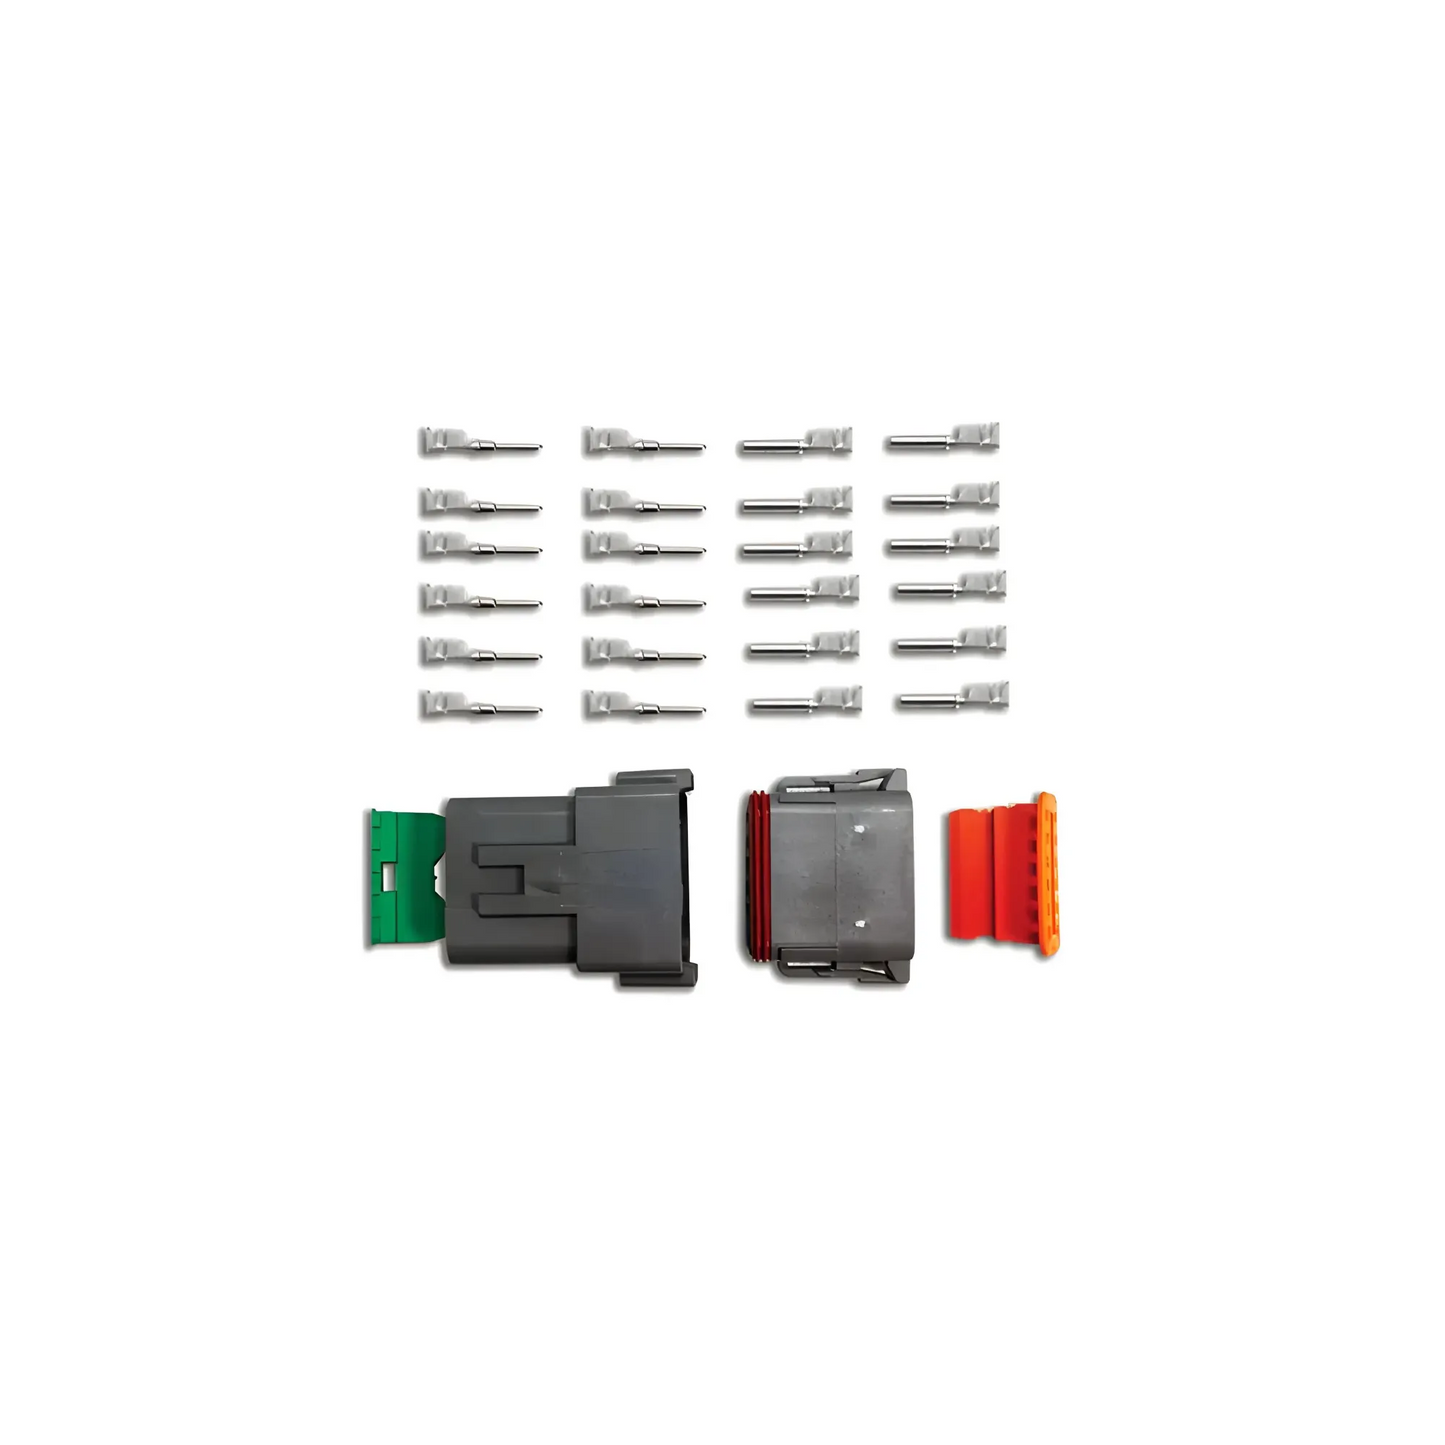 12-Pin Deutsch Connector Kit (14-16ga)